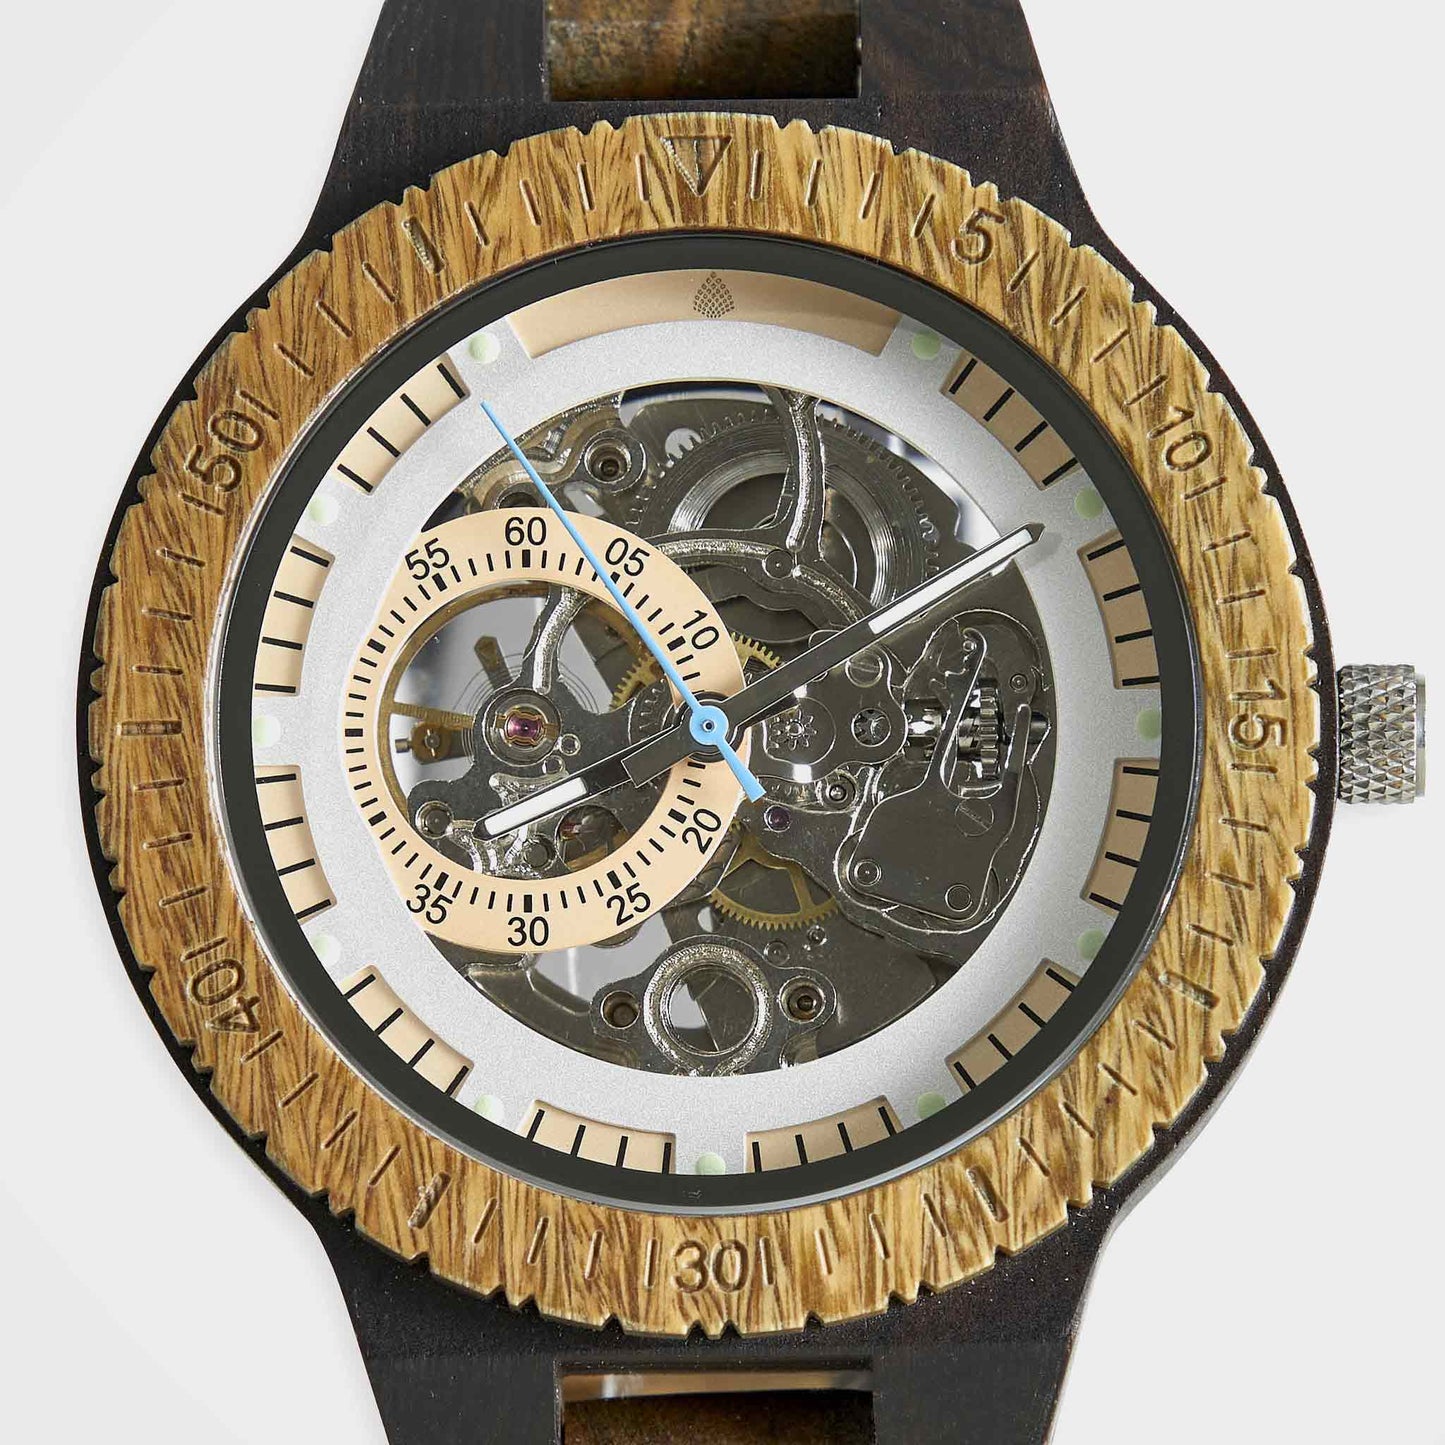 Handmade Wooden Wristwatch For Men: The Hemlock